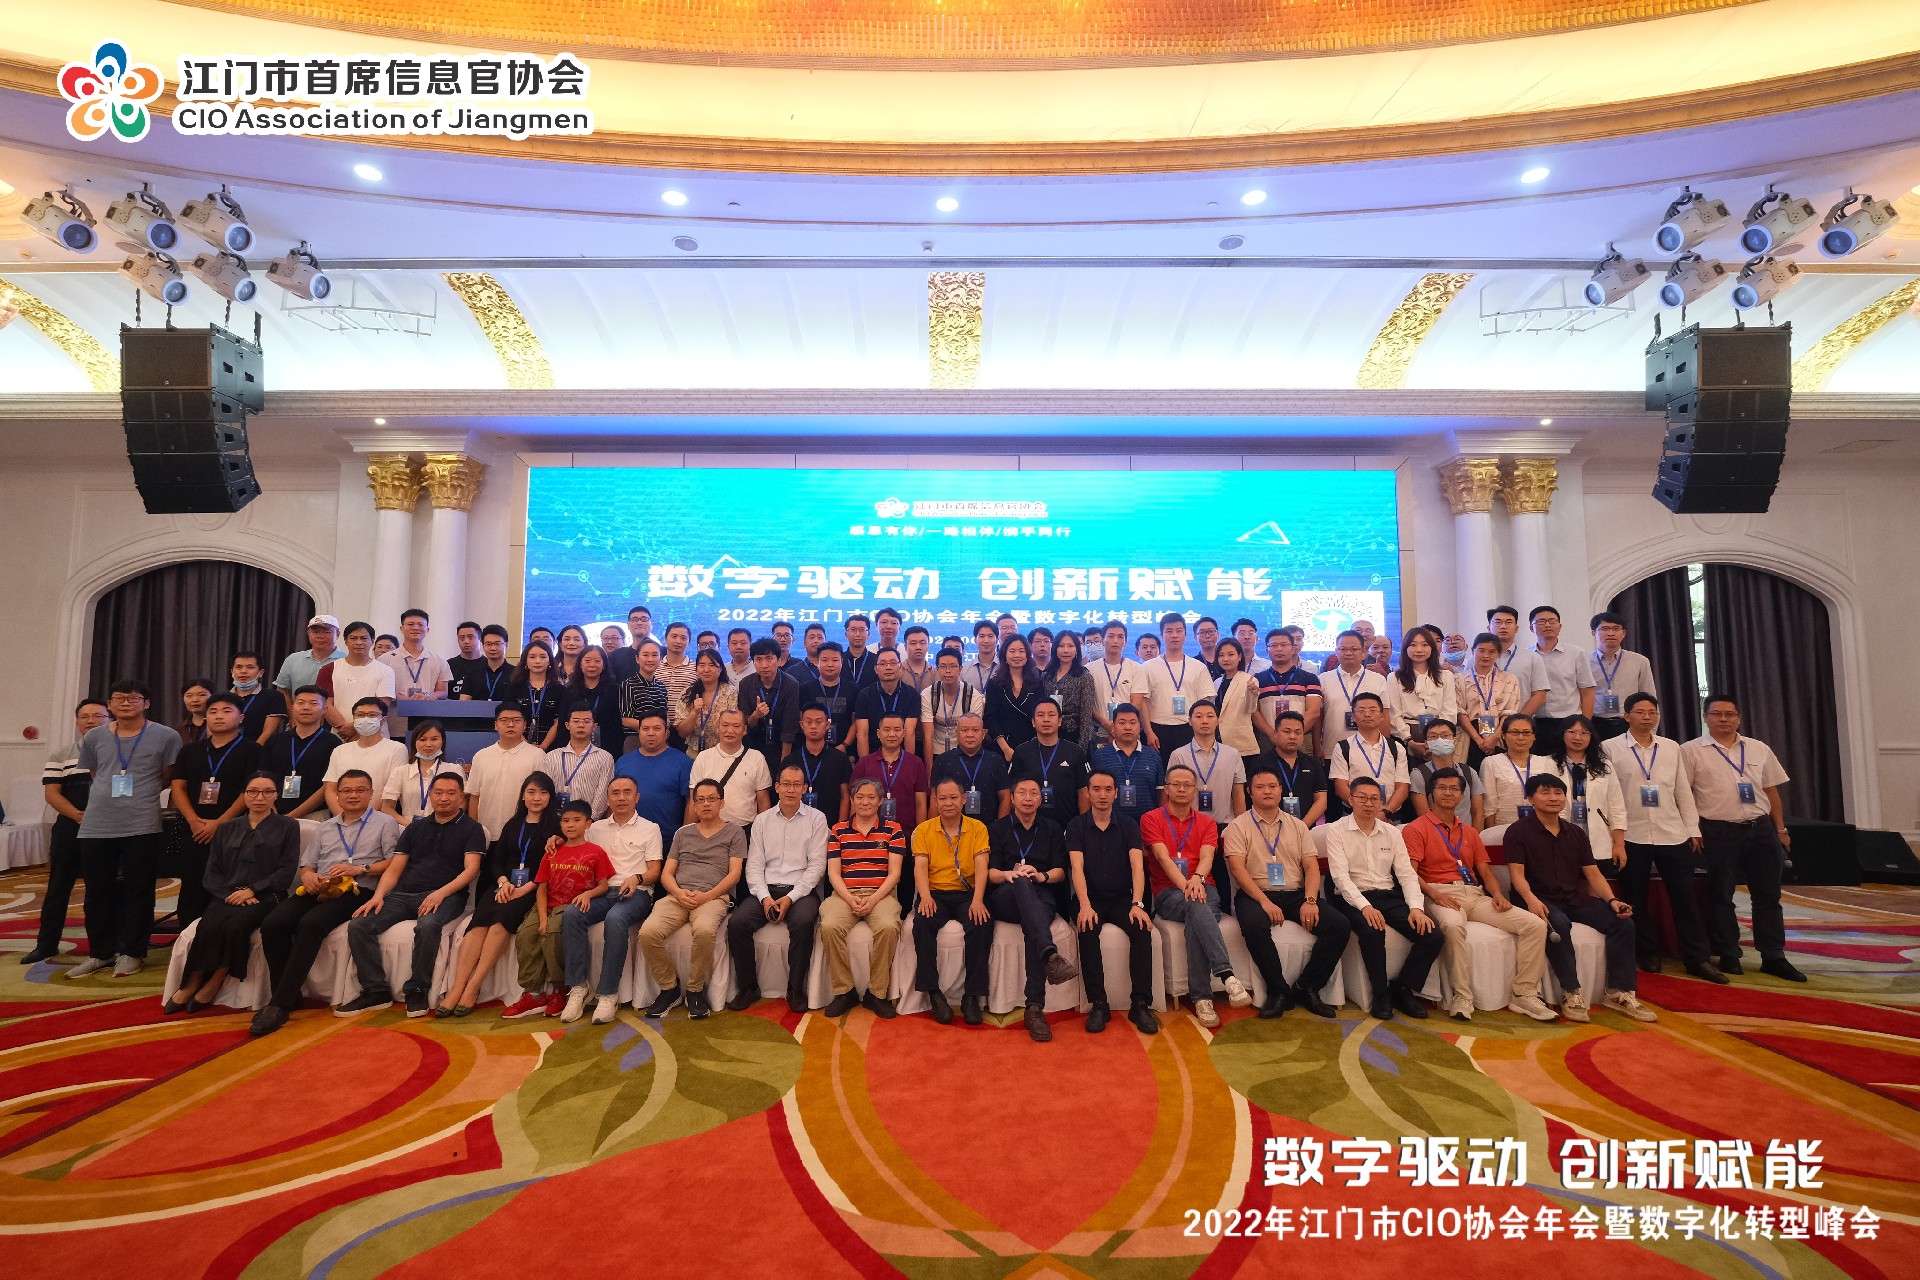 齐思达受邀参与合办江门CIO协会年会暨数字化转型峰会